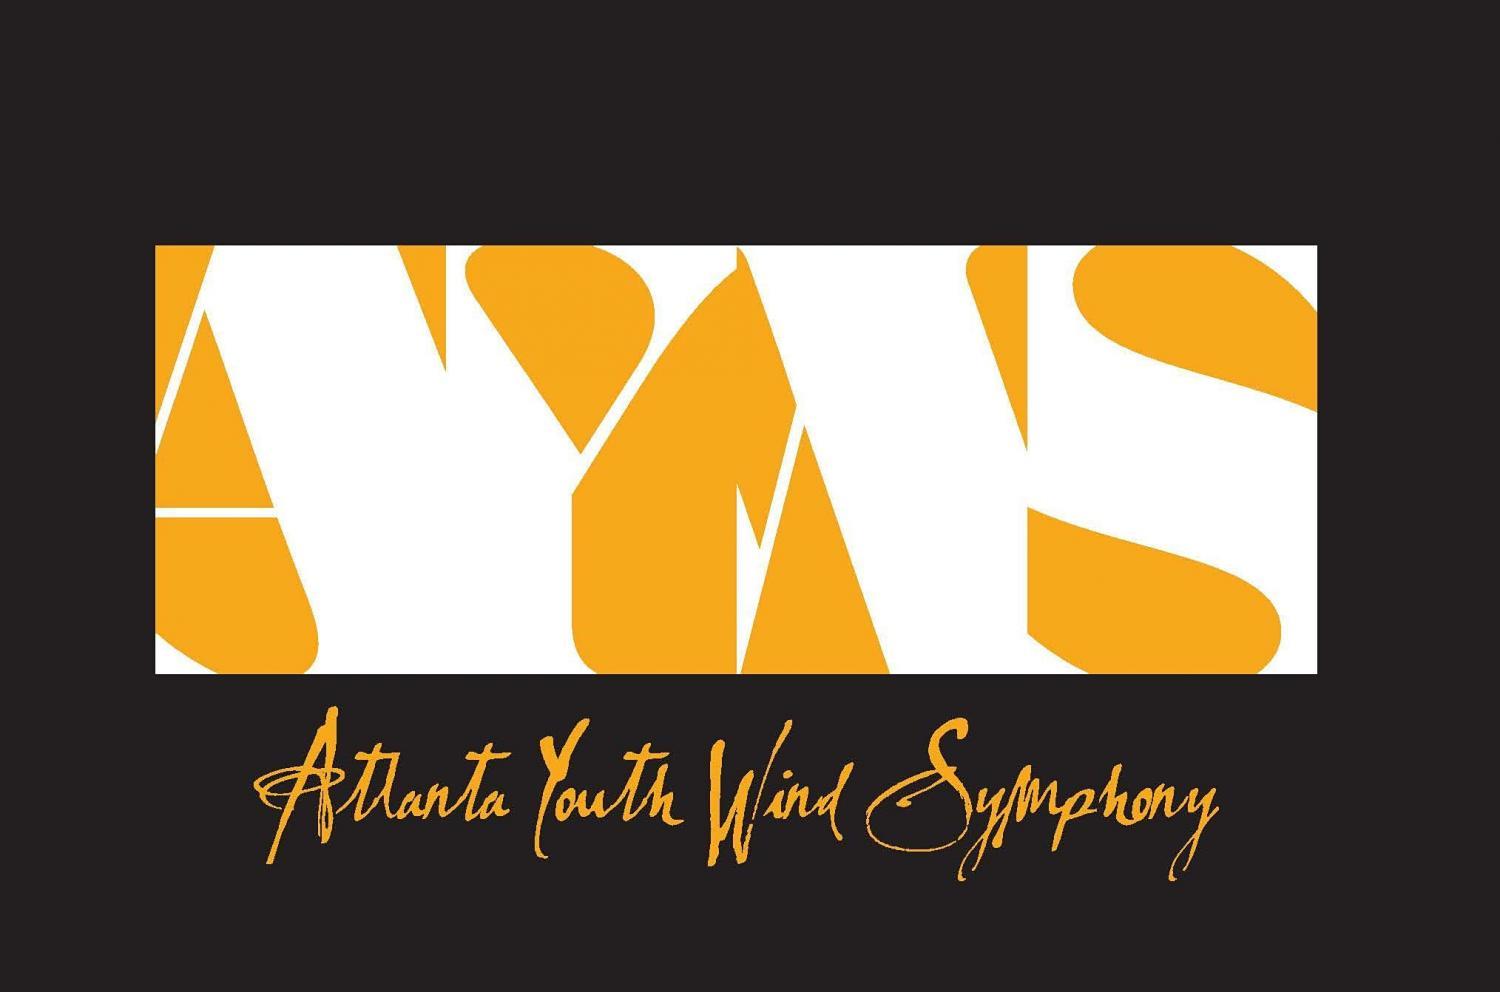 AYWS 2021-2022 Spring Concert